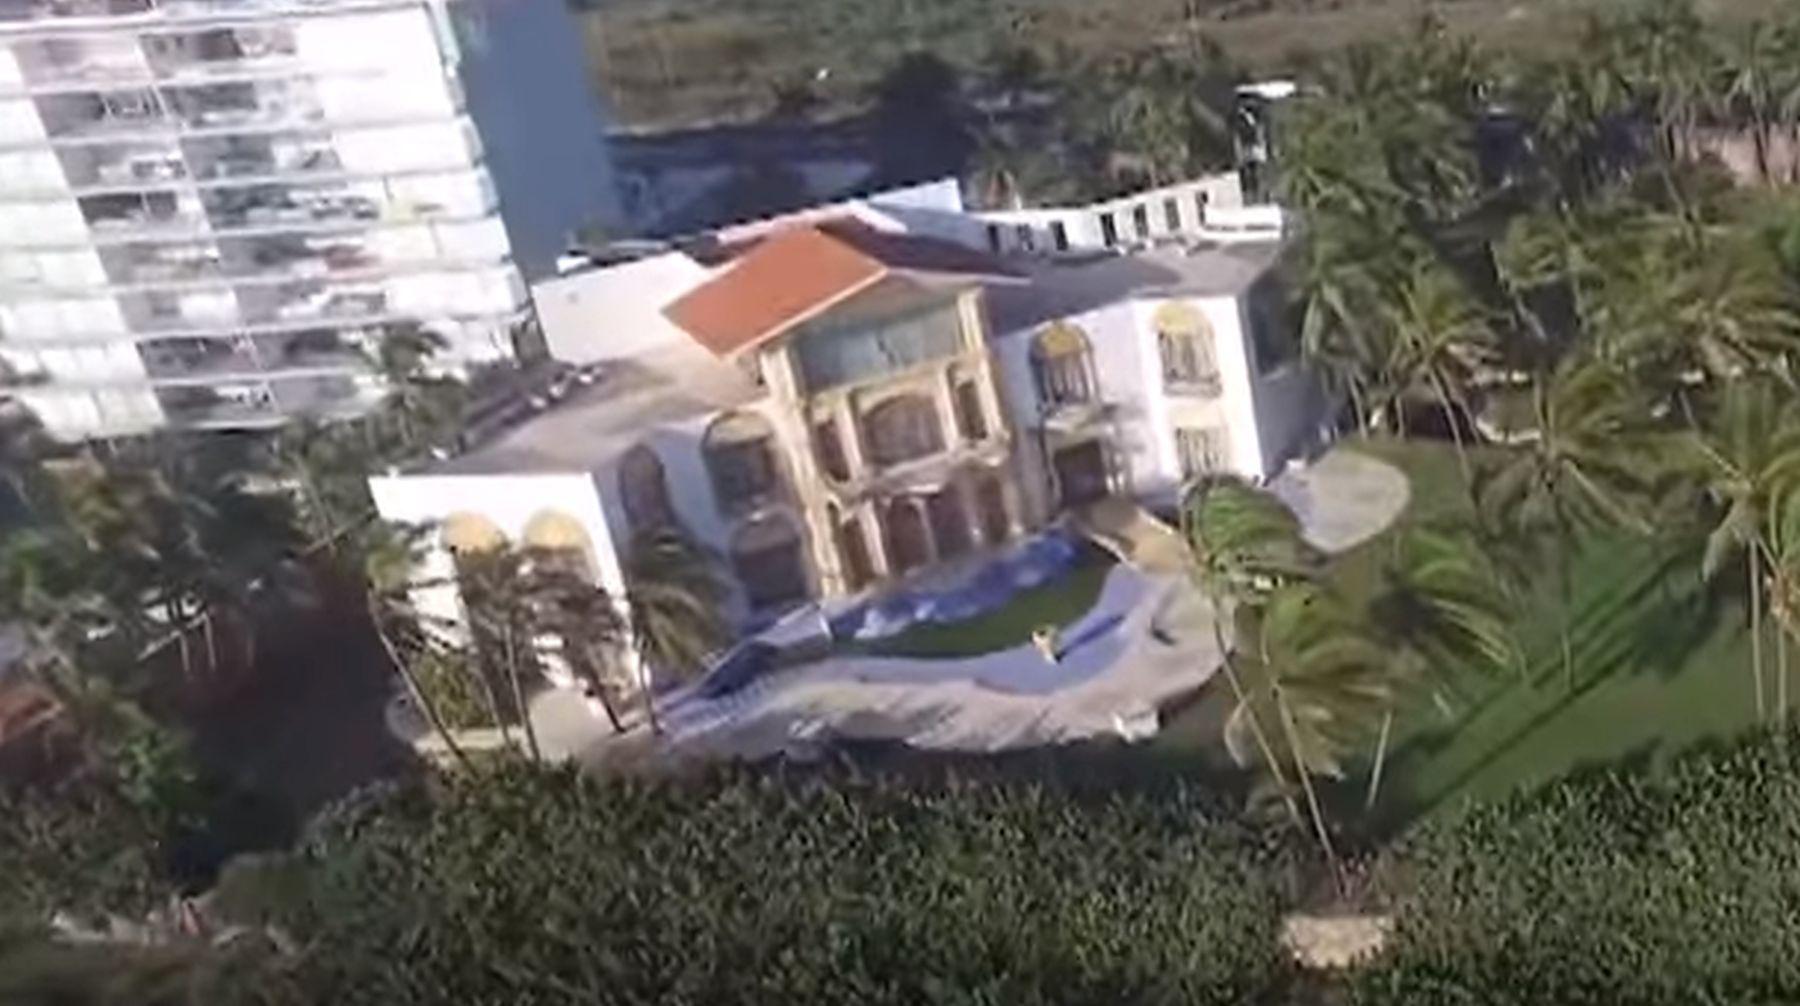 La mansión de Acapulco tal como se muestra en la serie de Netflix, Luis Miguel la usó para dar grandes fiestas con sus amigos (Foto: Netflix)